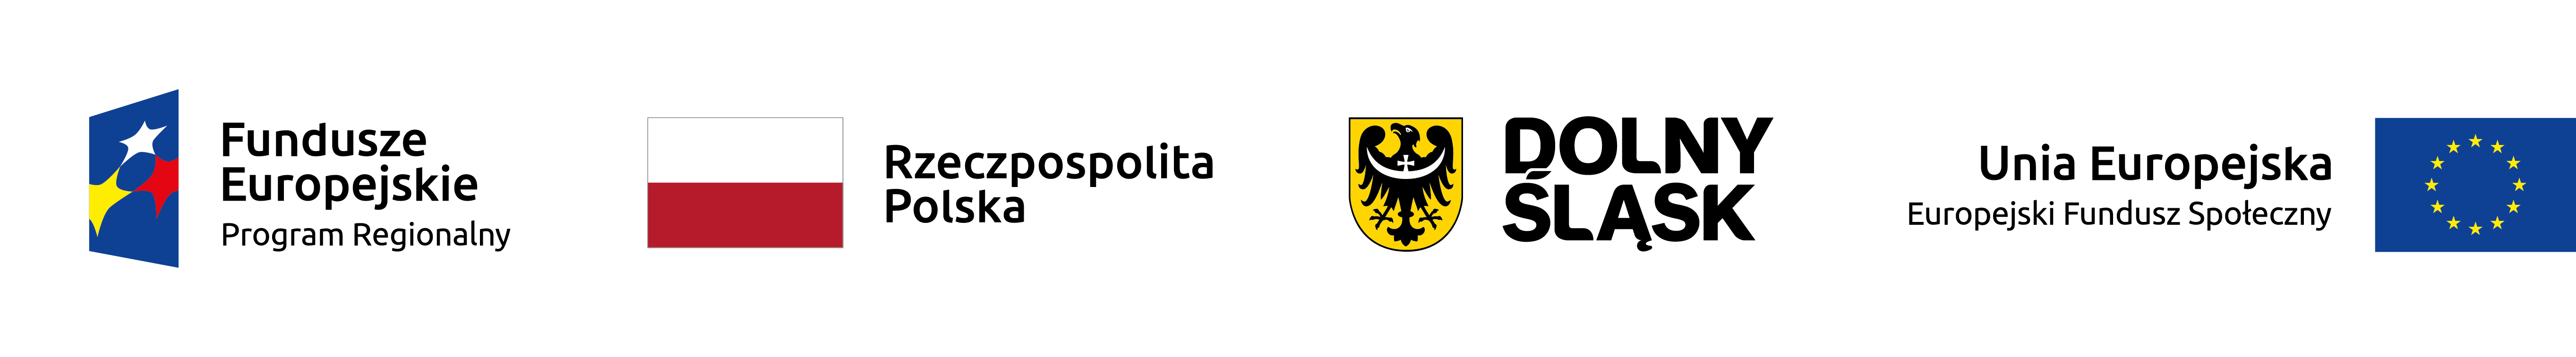 grafika przedstawia flagi UE oraz Polski, herb Dolnego Śląska i logo funduszy europejskich